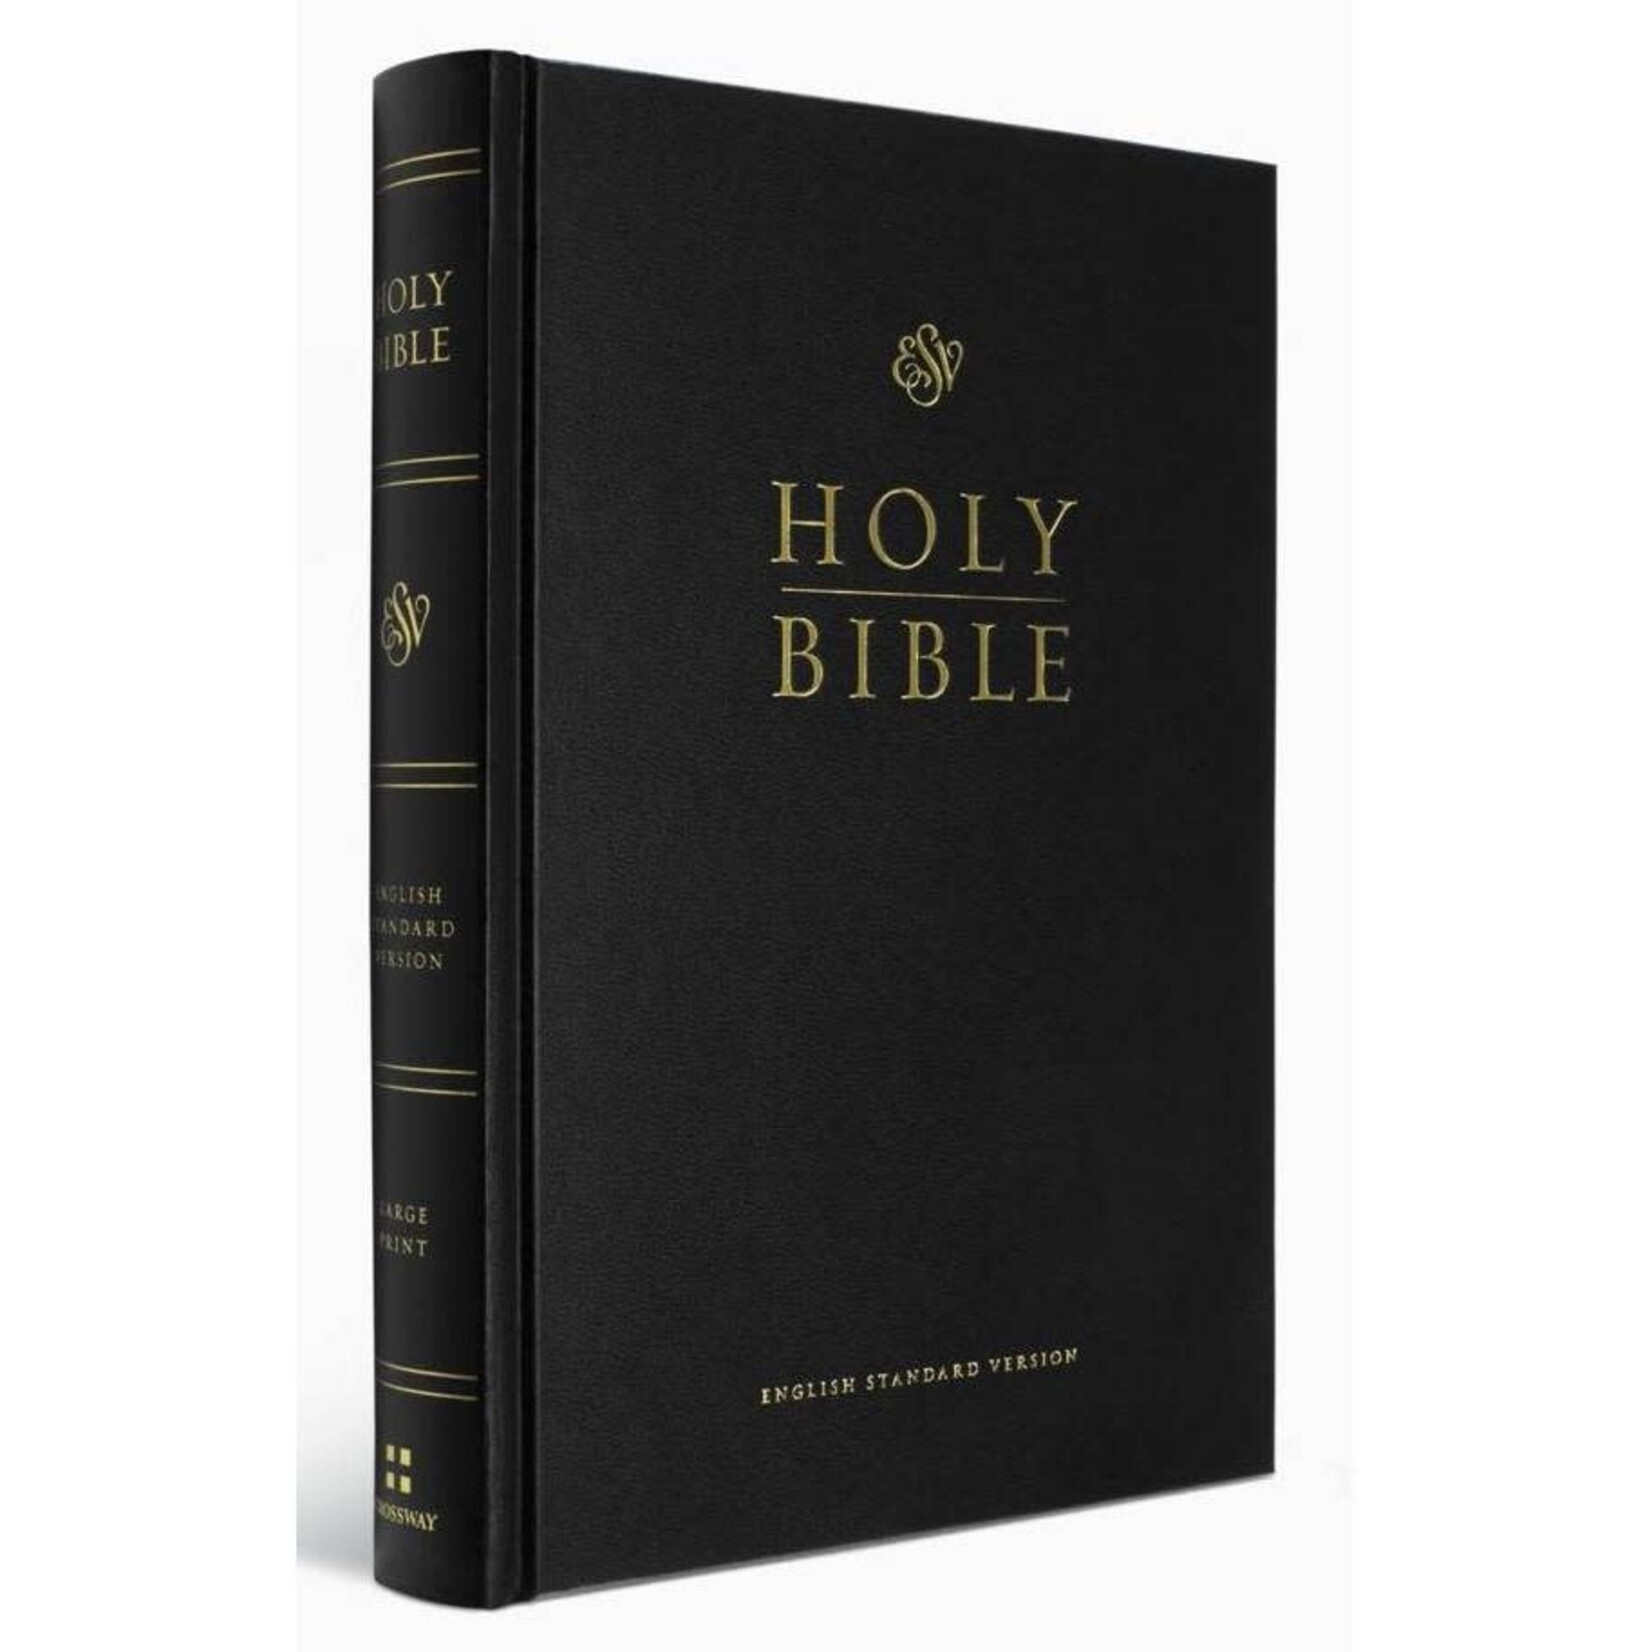 Crossway (ESV) English Standard Version Pew & Worship Large Print Bible - Black